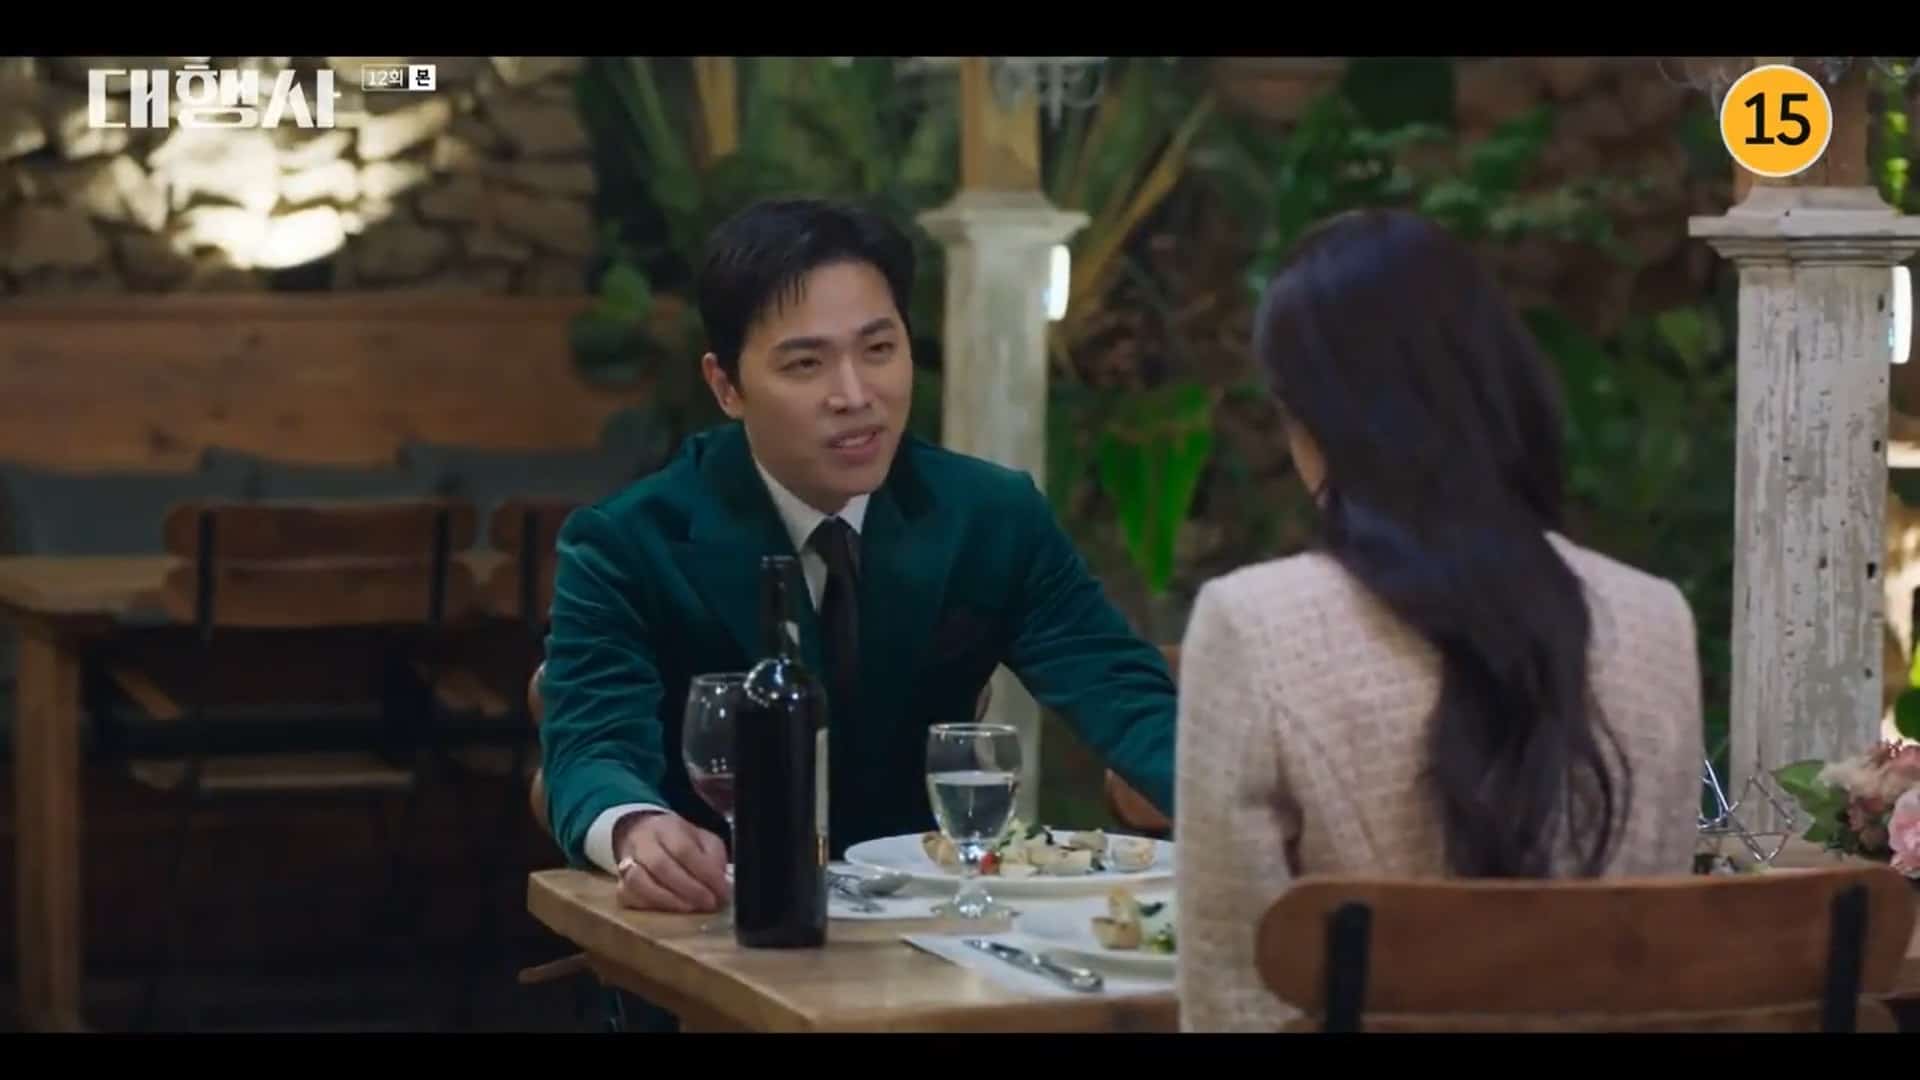 Ha Na's Blind Date